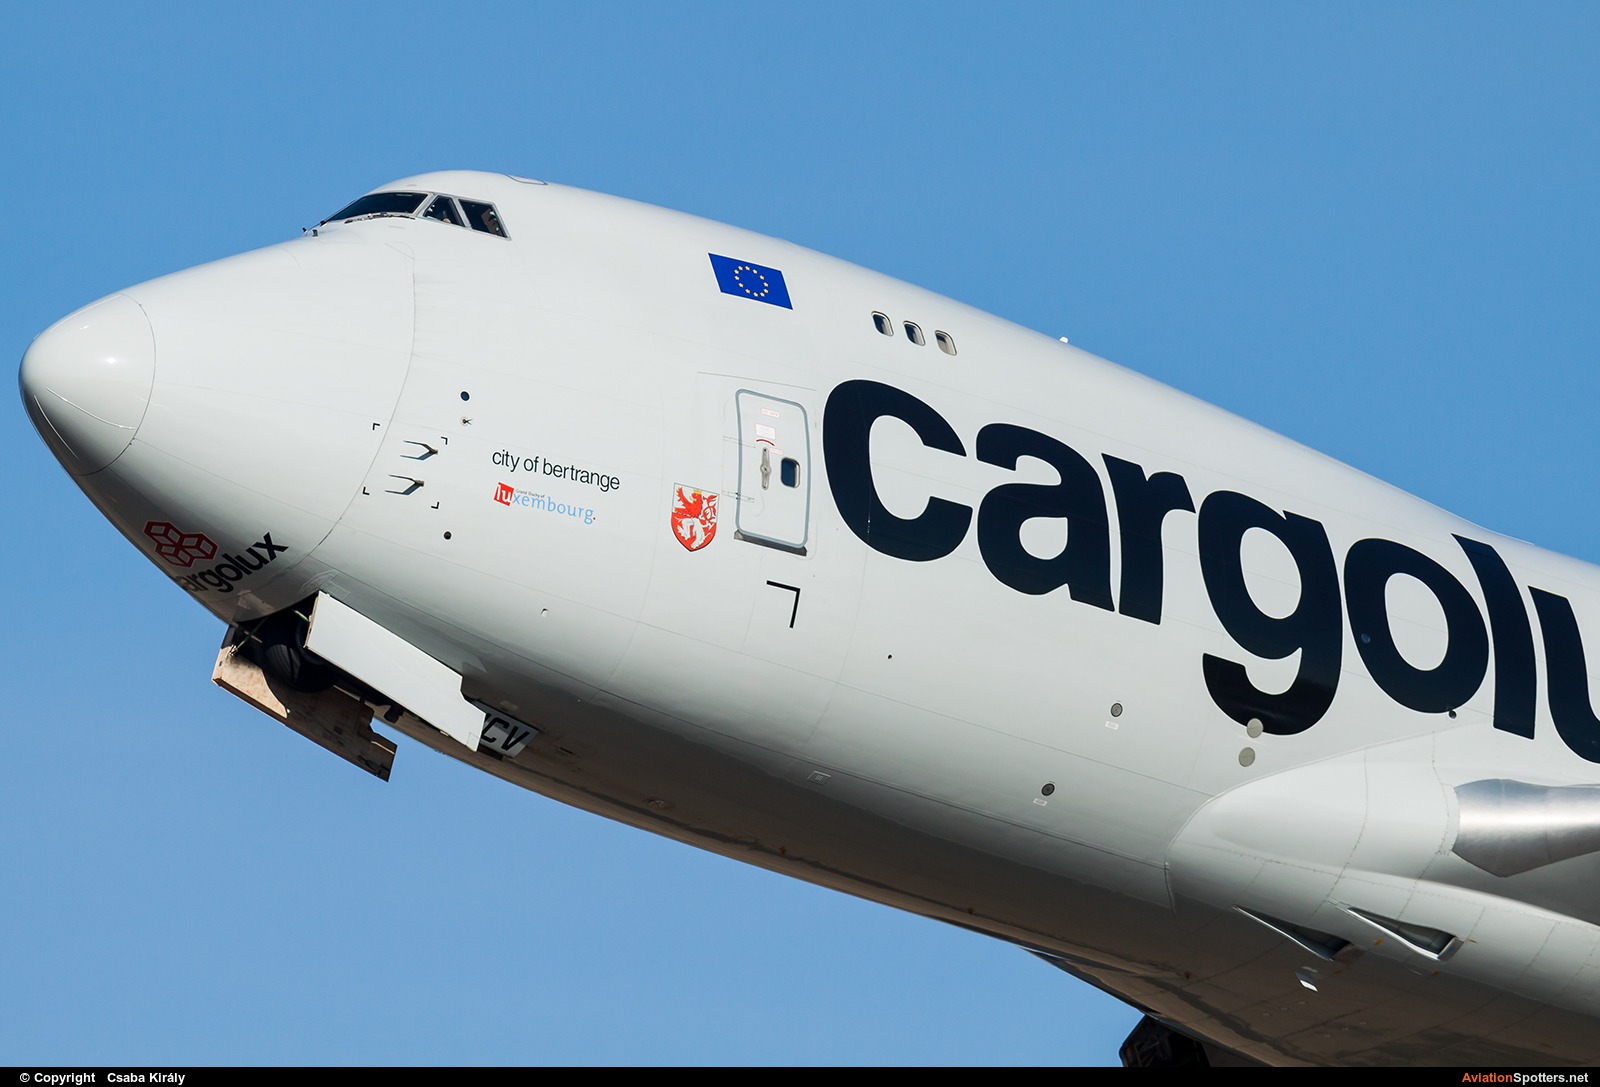 Cargolux  -  747-400F  (LX-UCV) By Csaba Király (Csaba Kiraly)